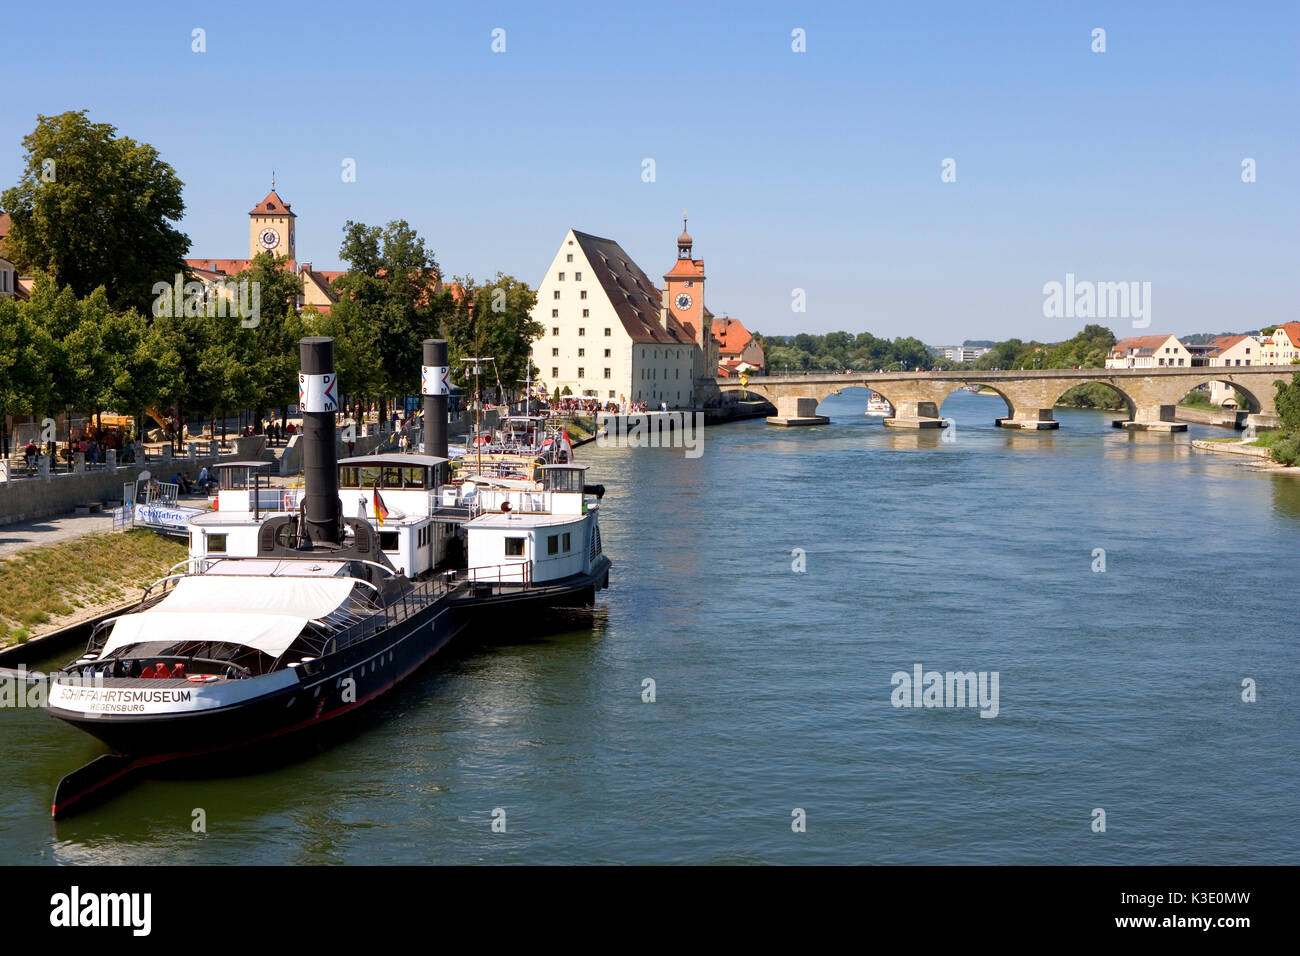 Regensburg, Danube Schifffahrts musée sur la rive Marc Aurel, Vieille Ville, pont de pierre, le sel grange avec porte de la ville, Banque D'Images